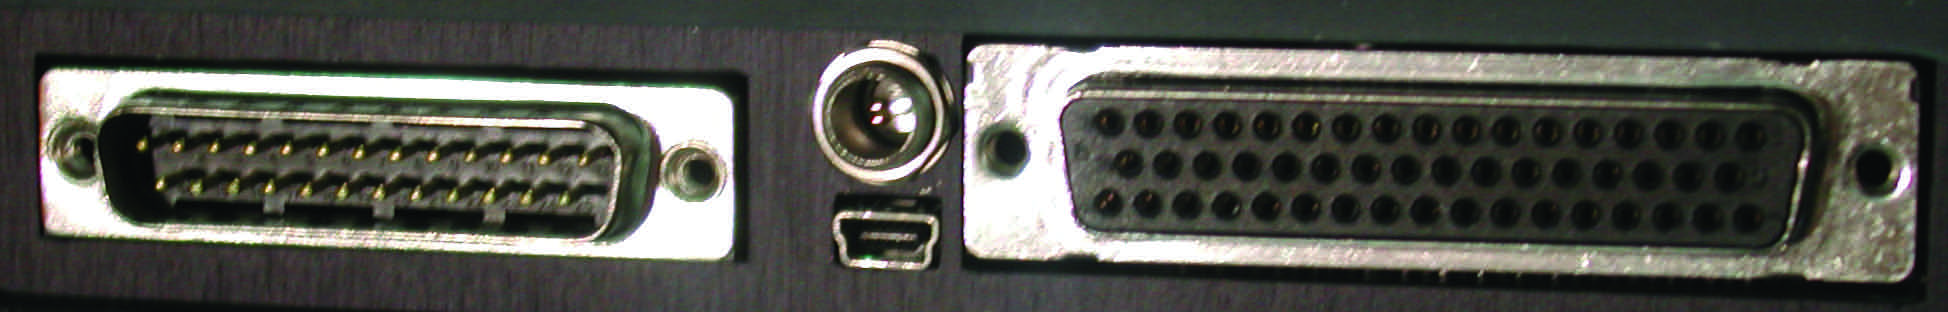 3. MANEJO CONECTORES DE LA MAQUINA Conector tipo D 25 pines Usado para conectar la maquina al vehiculo.